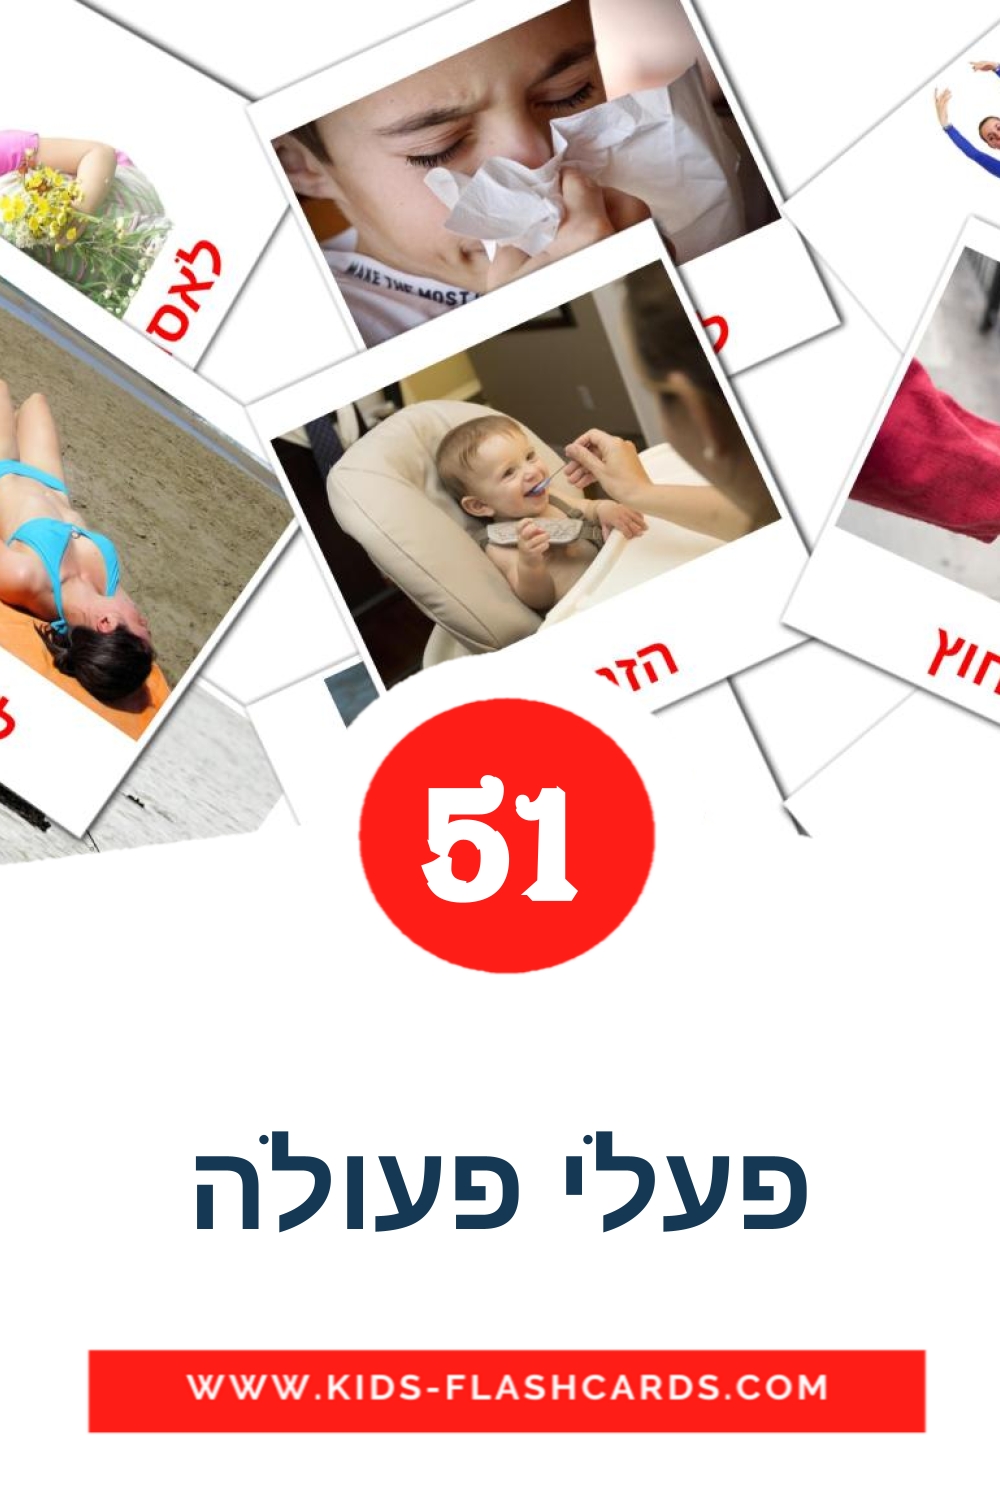 51 Cartões com Imagens de פעלי פעולה para Jardim de Infância em hebraico